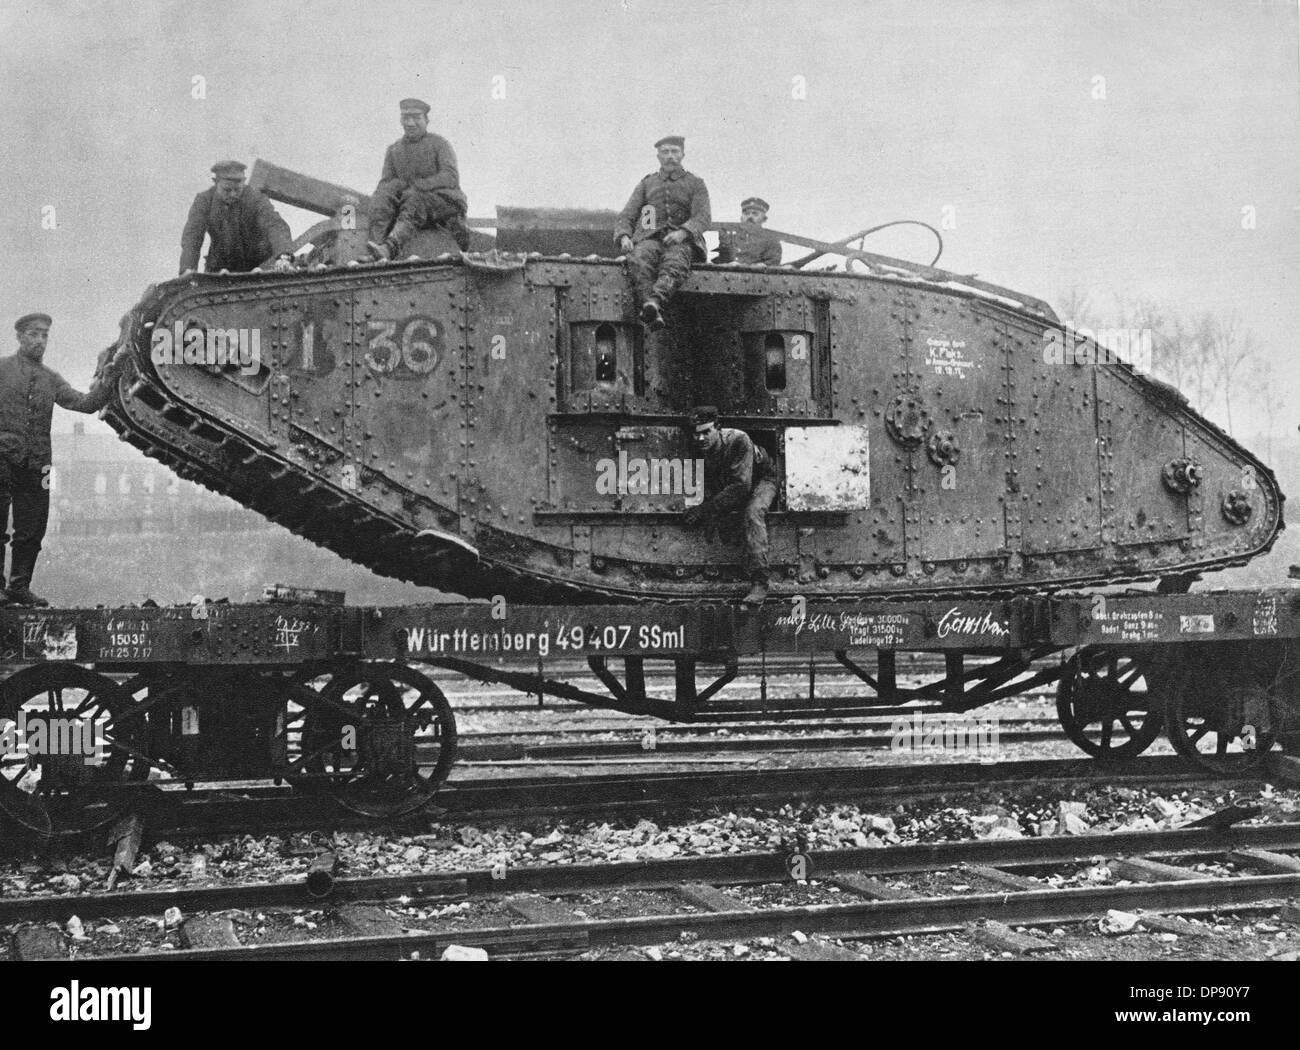 Ein englischer Panzer, erobert von deutschen Truppen in der Schlacht von Cambrai, Ort und Datum unbekannt. Fotoarchiv für Zeitgeschichte Stockfoto